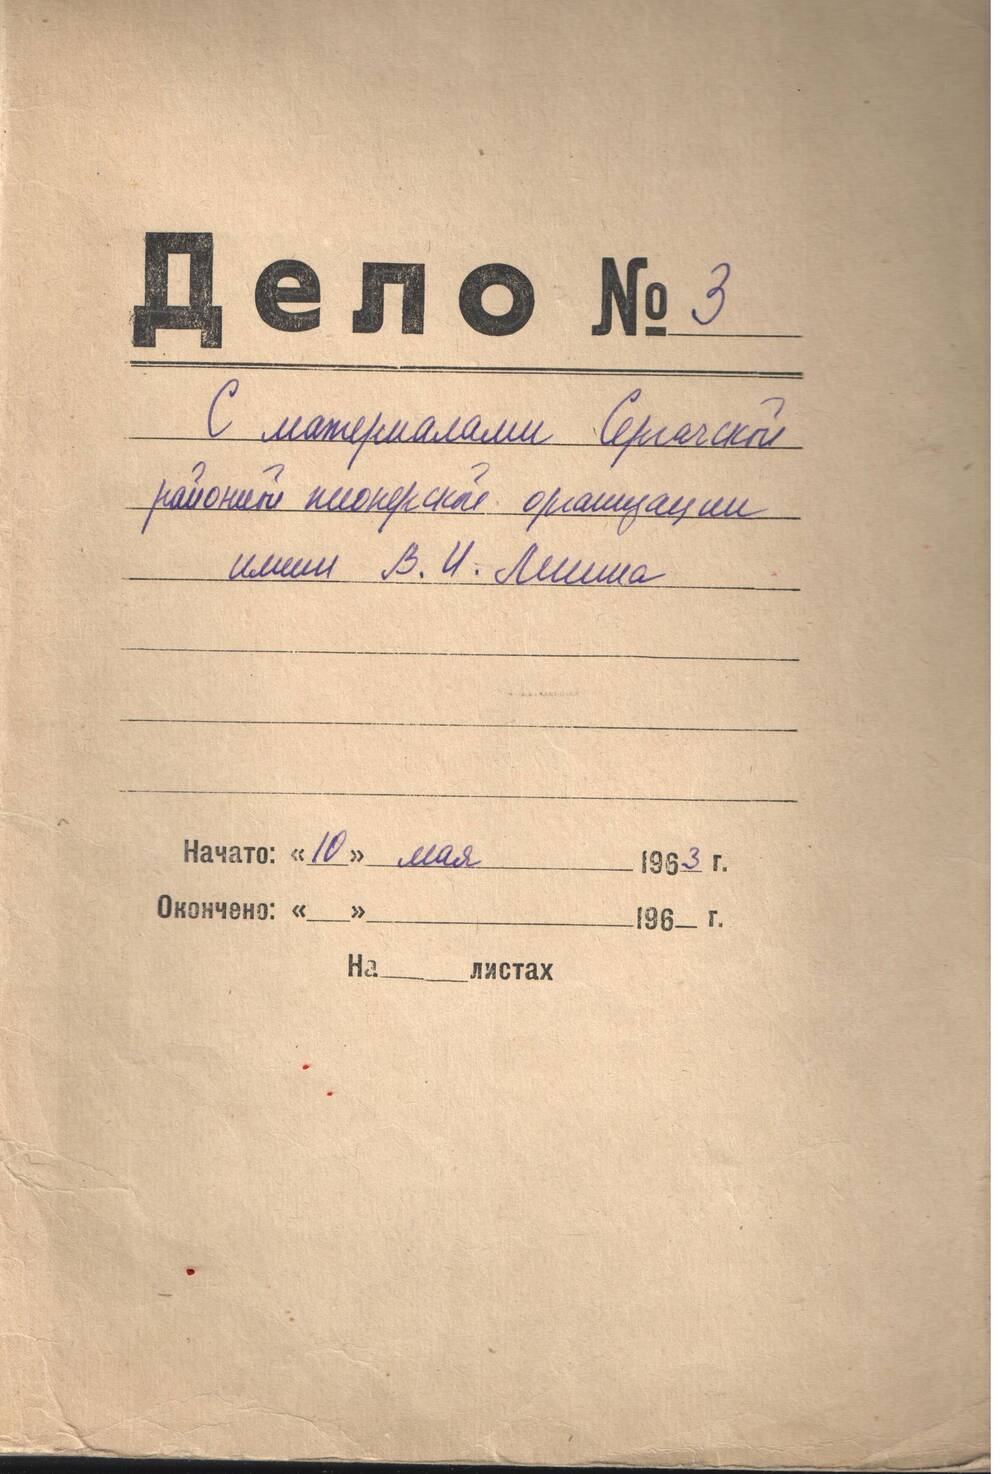 Дело № 3 с материалами Сергачской пионерской организации  1963-1964 гг